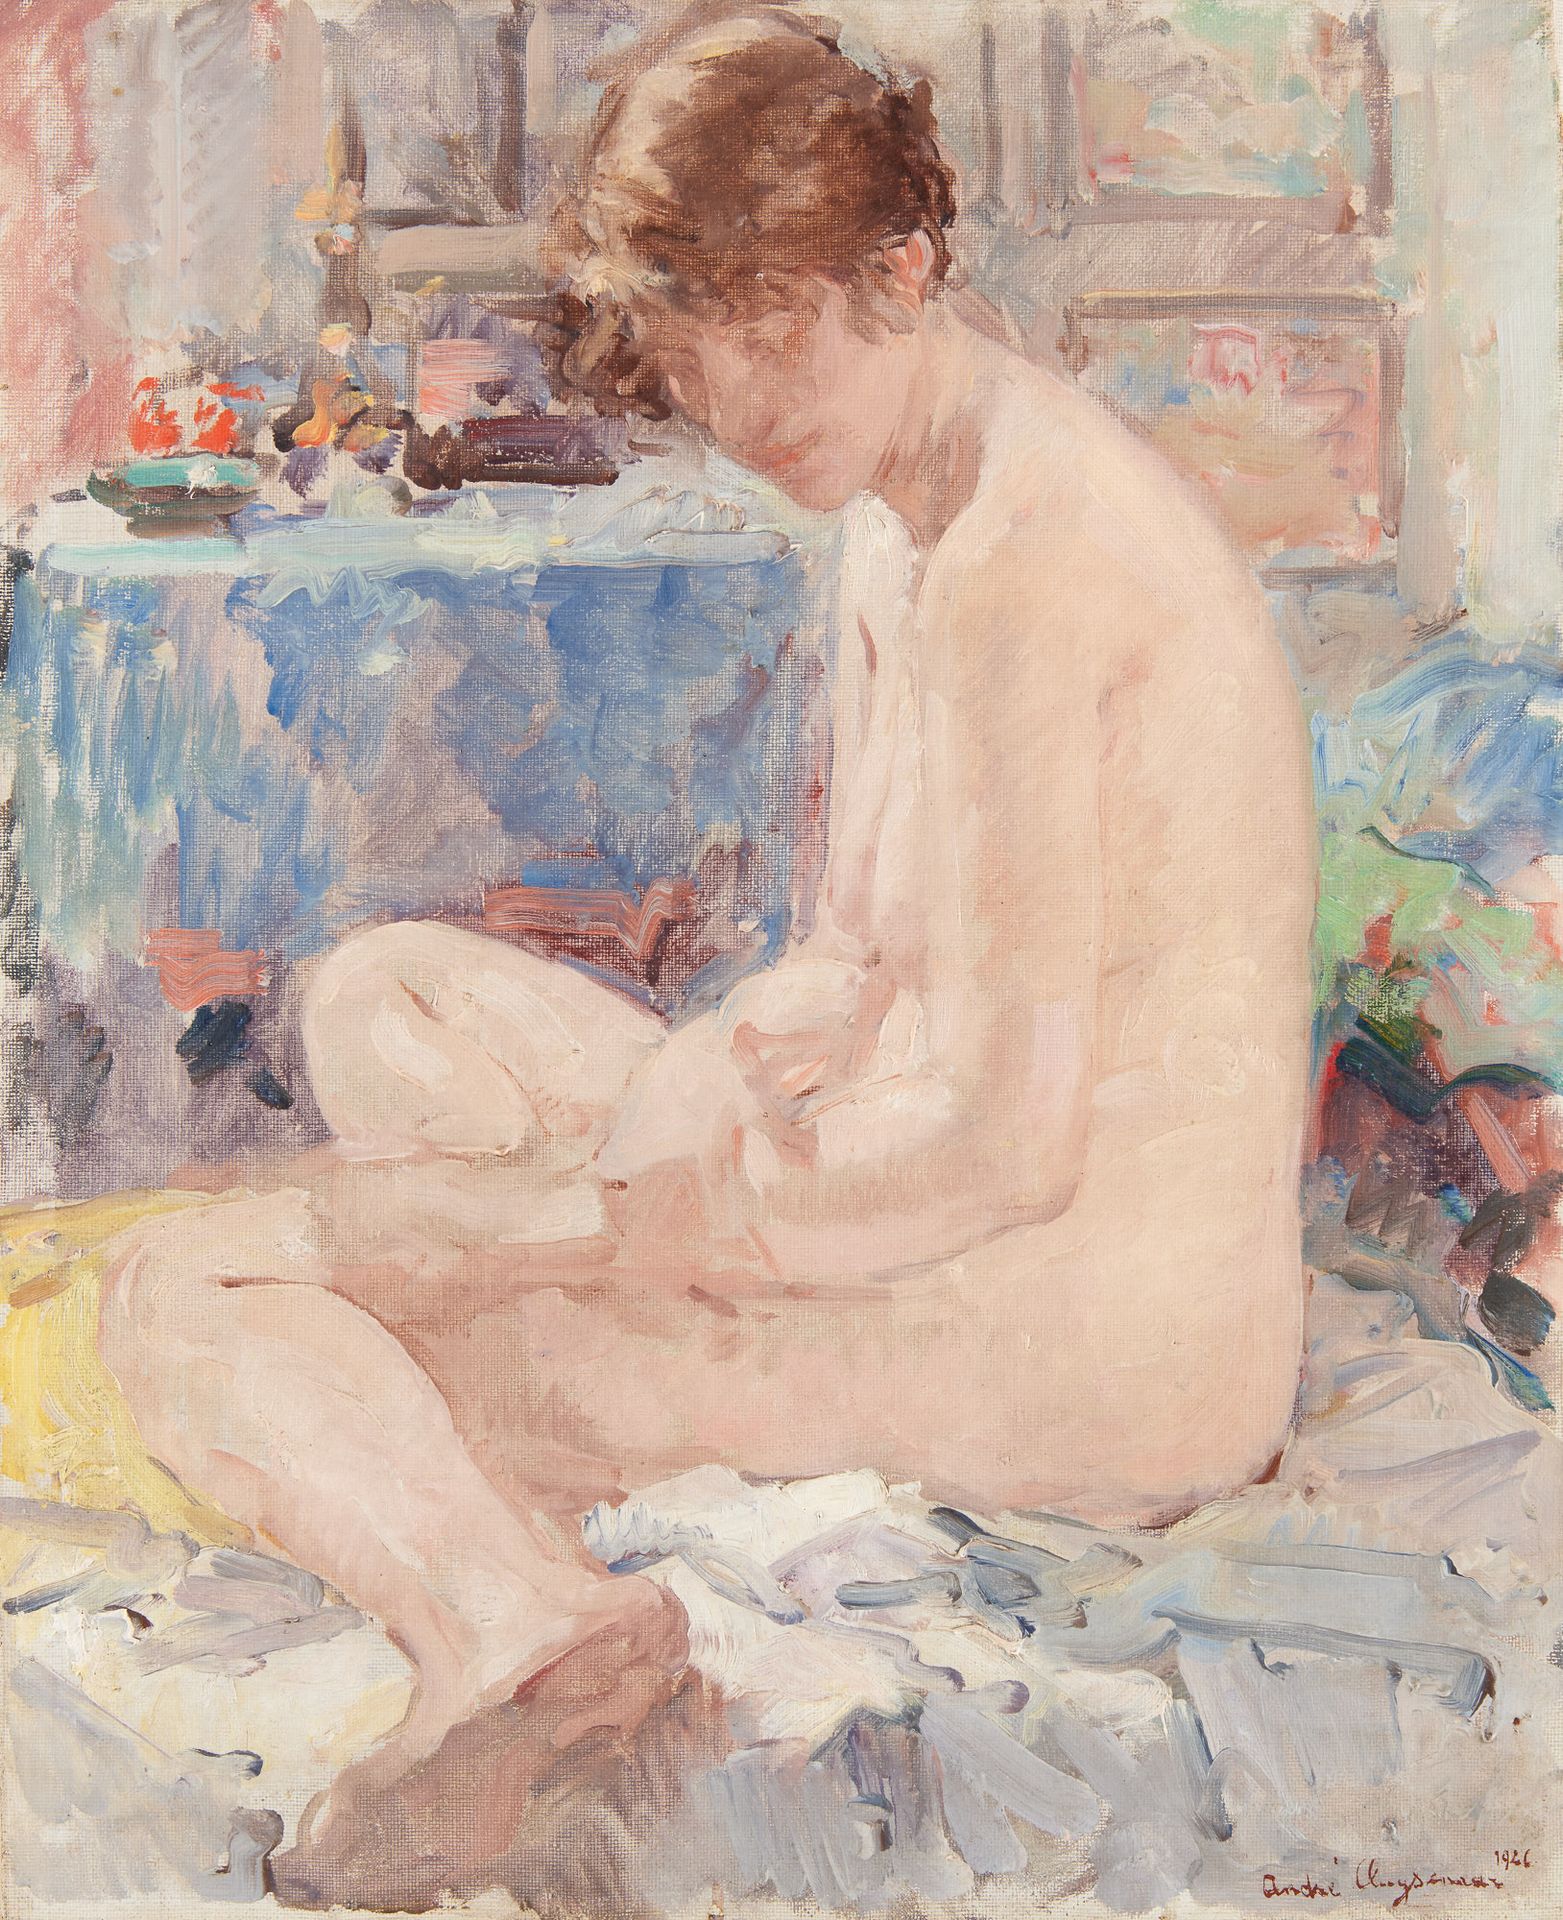 André CLUYSENAAR École belge (1872-1939) Huile sur toile: Jeune femme dénudée.

&hellip;